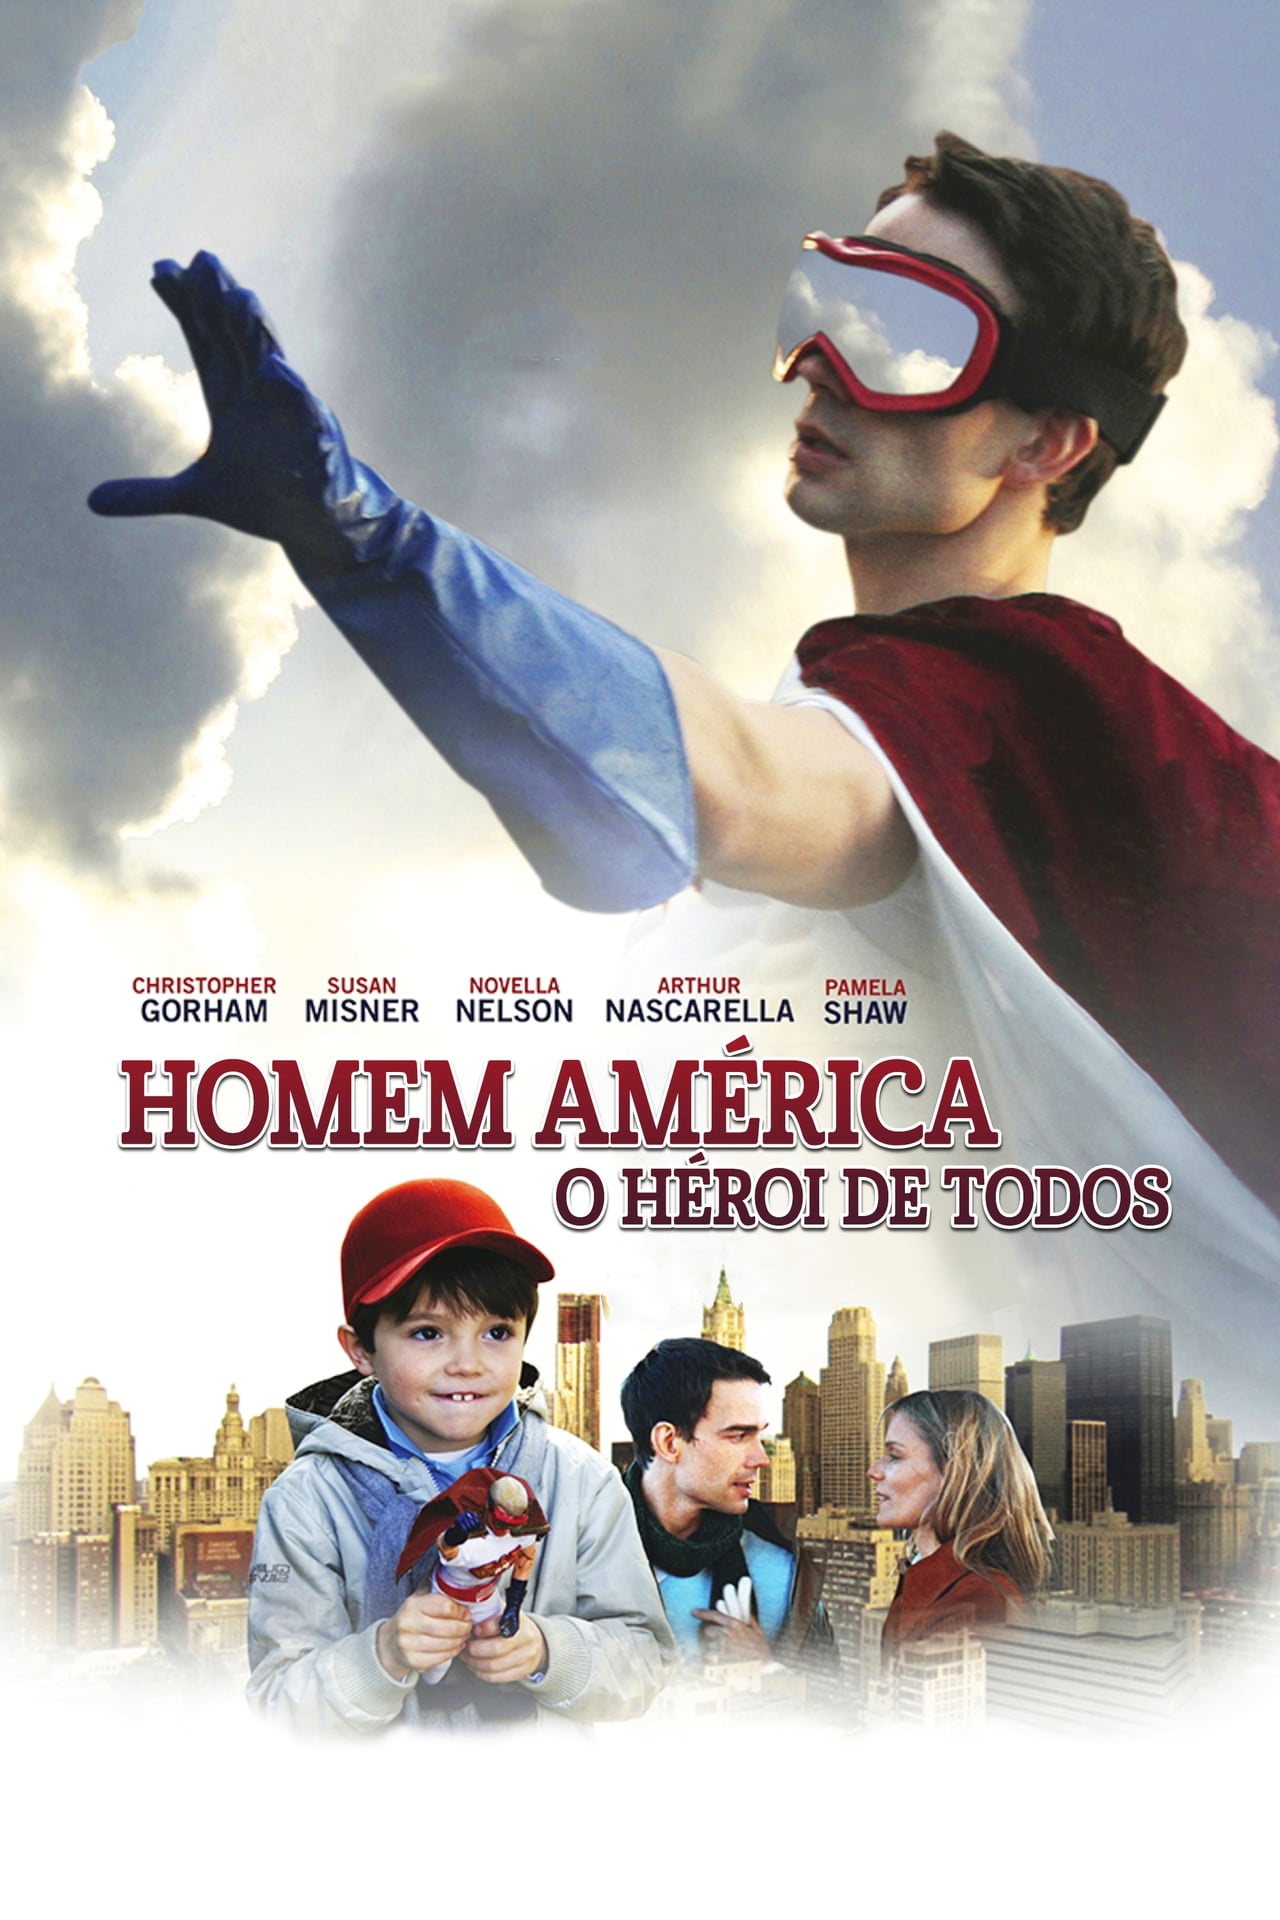 Capitão América: O Herói de Todos (2012)